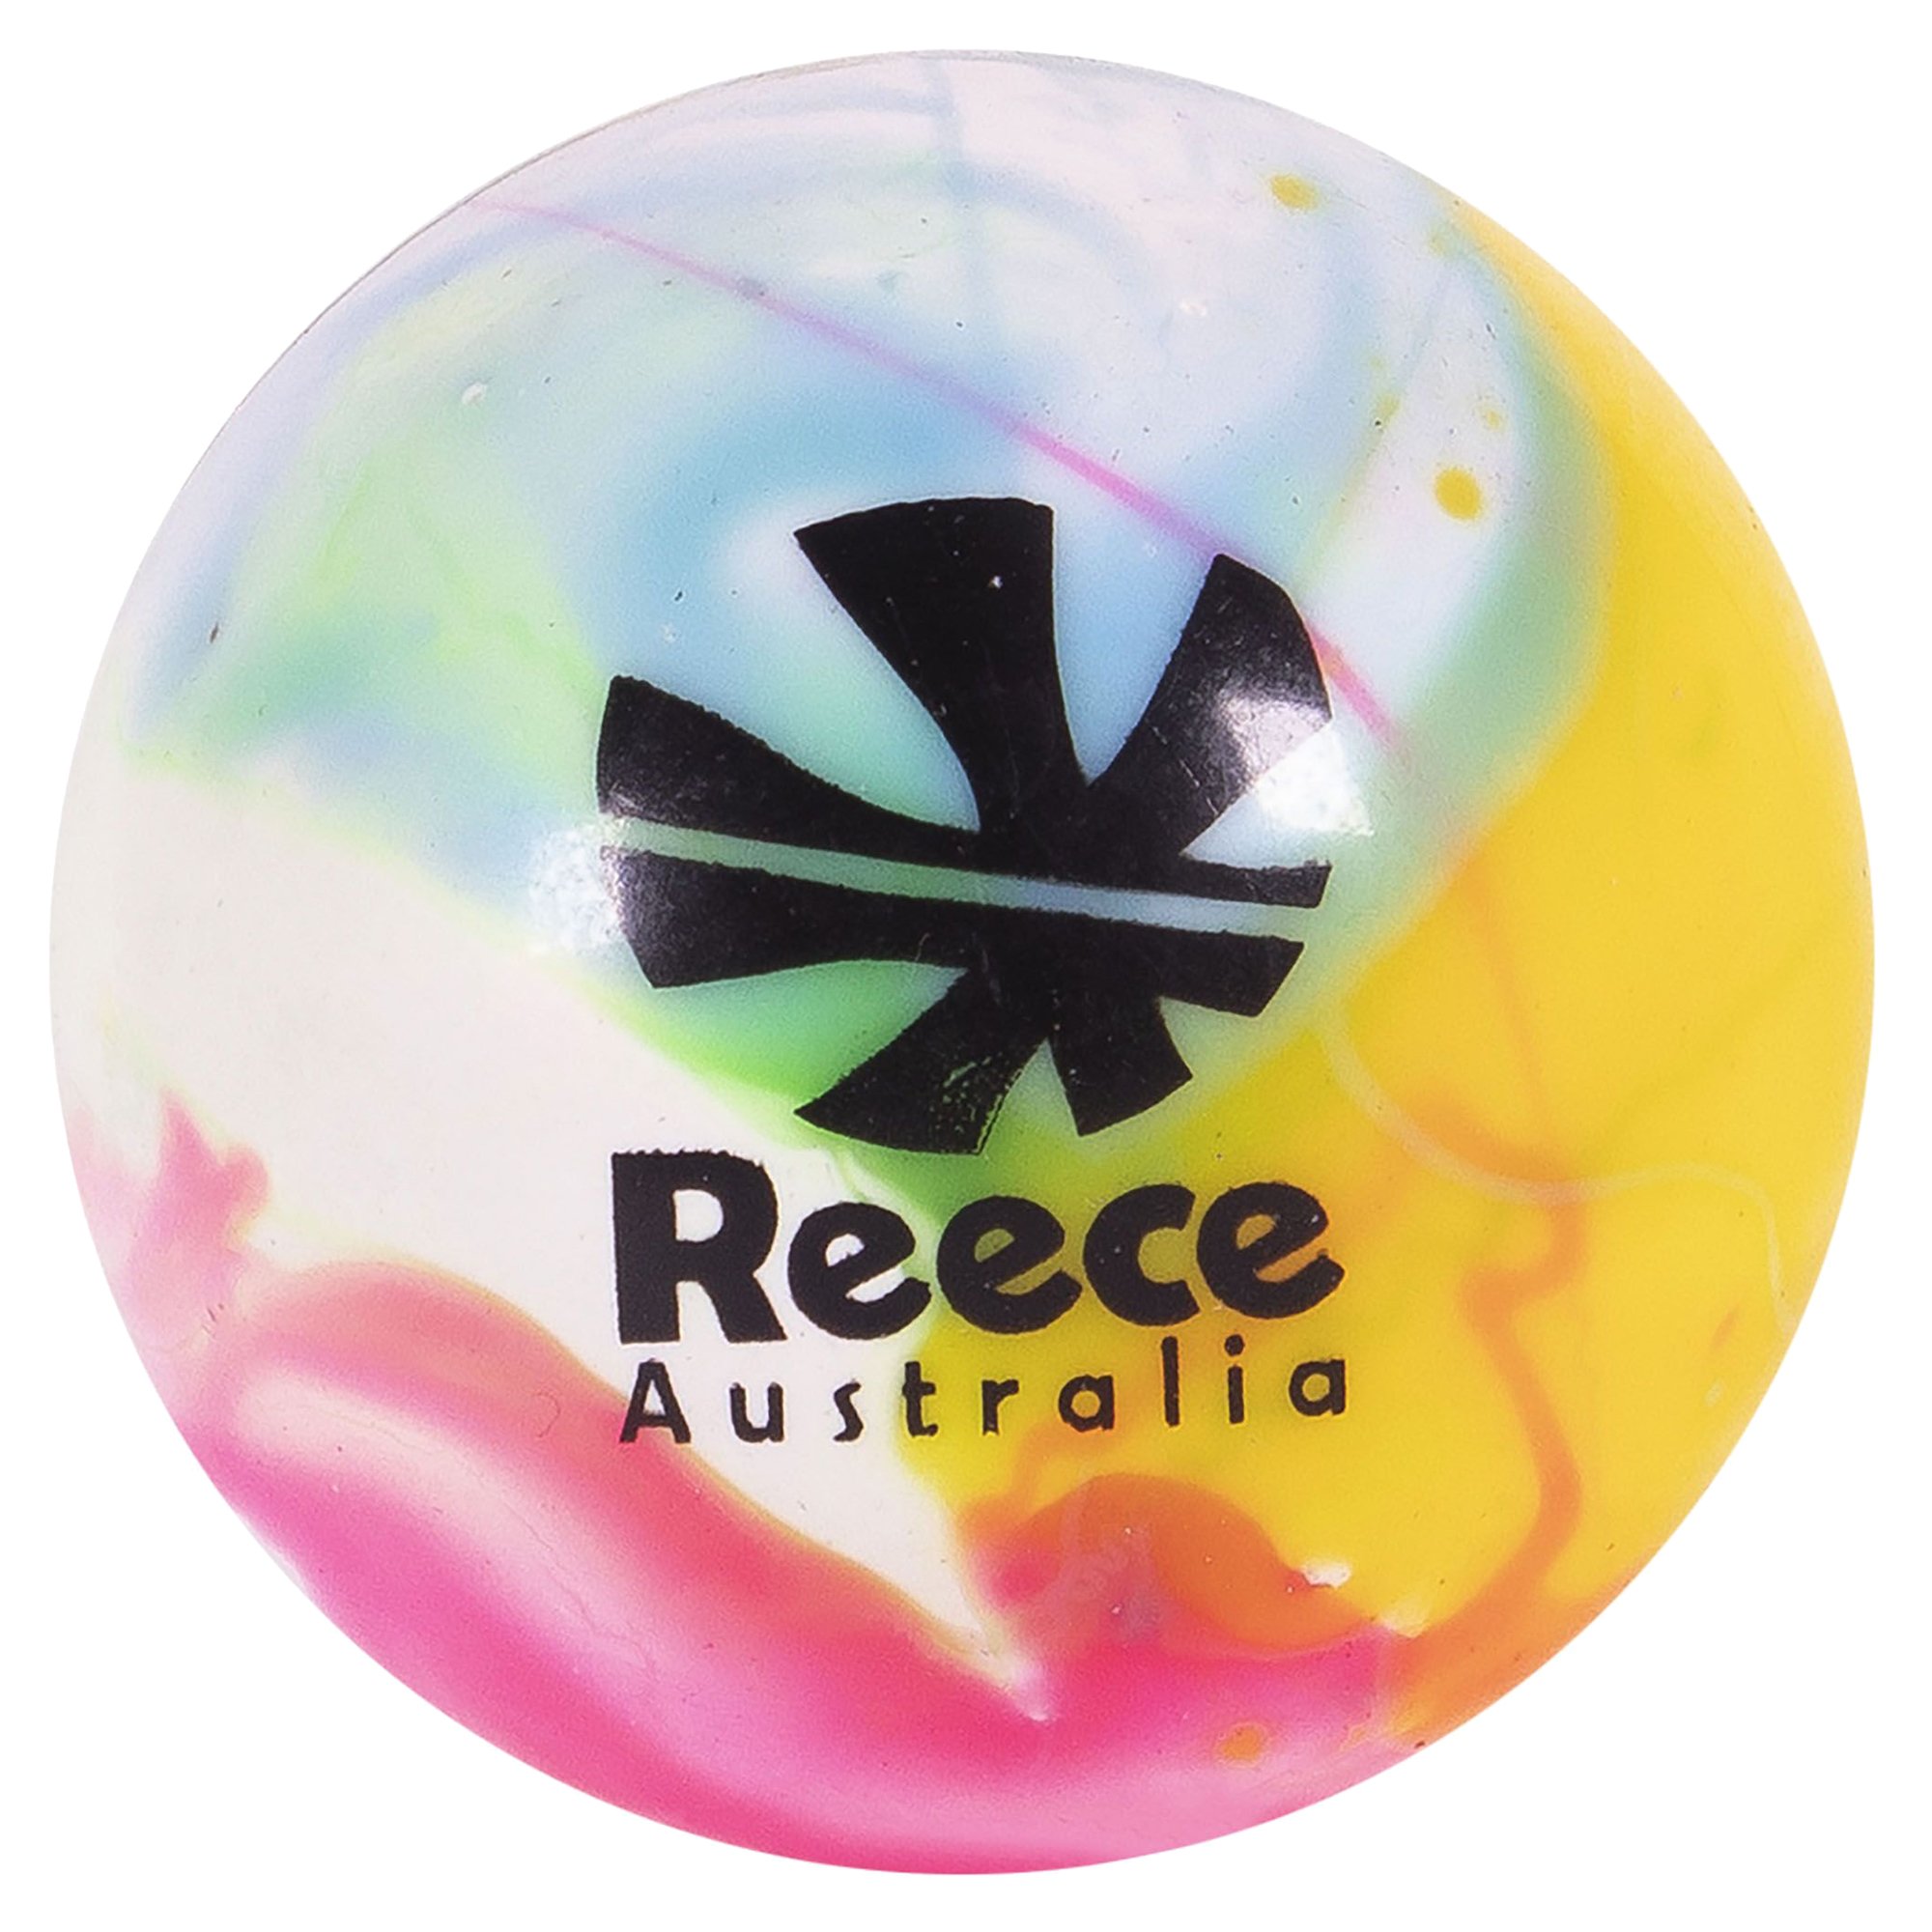 Reece Australia Match Fantasy Ball 12er Pack